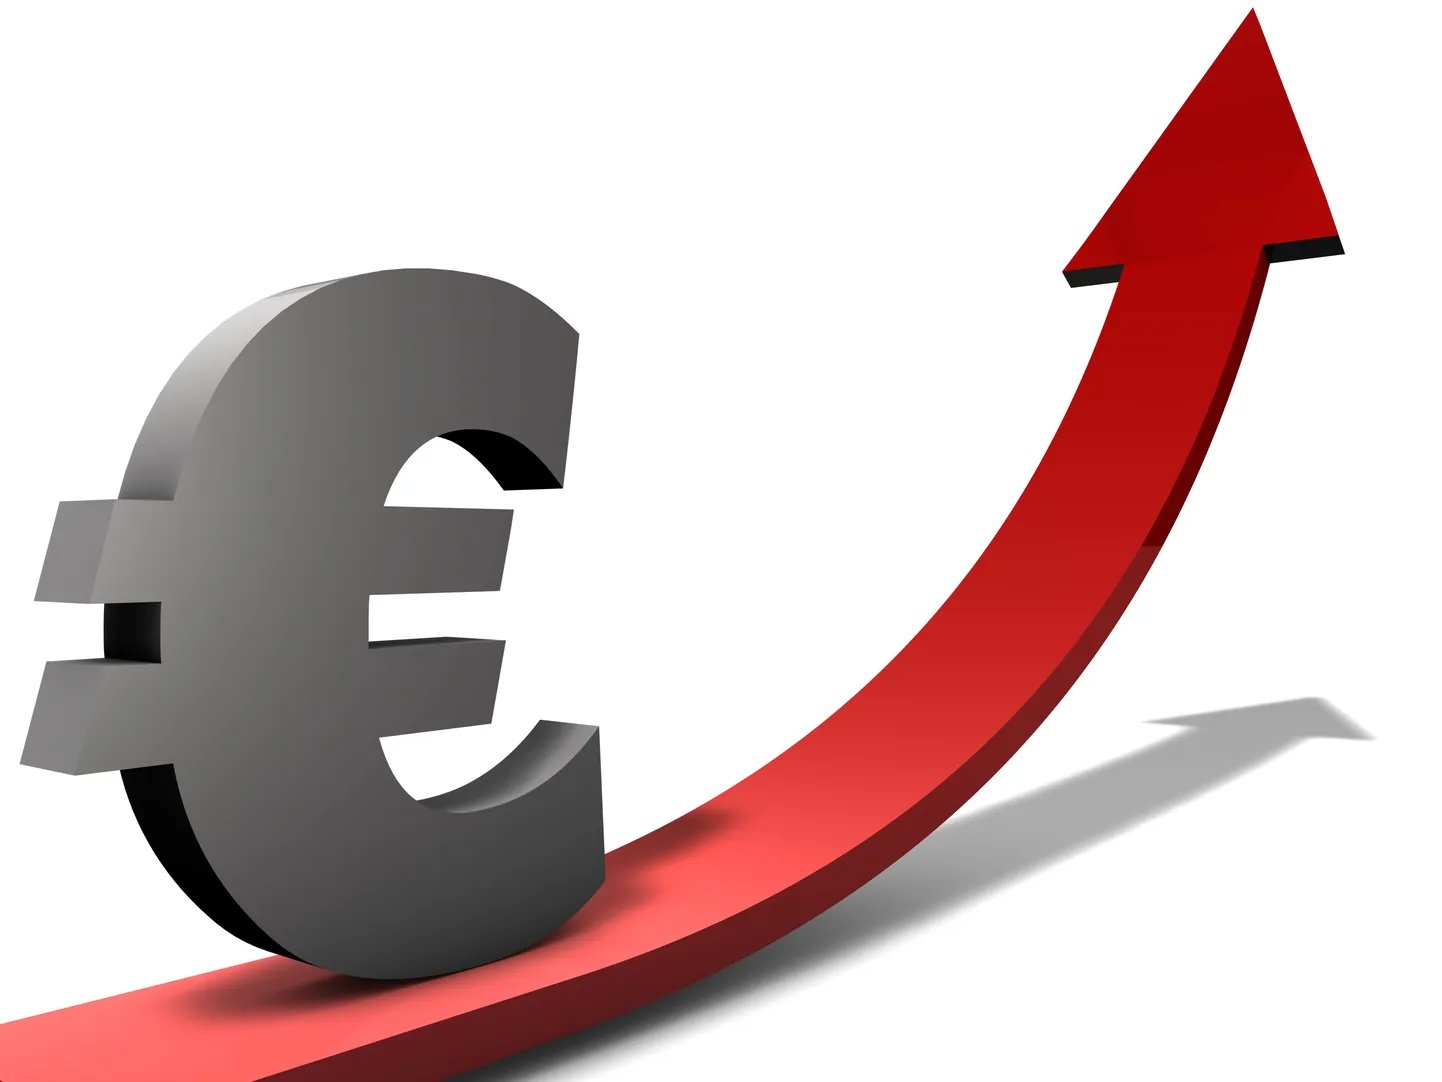 Переход на евро некоторыми используется как повод повысить цены.